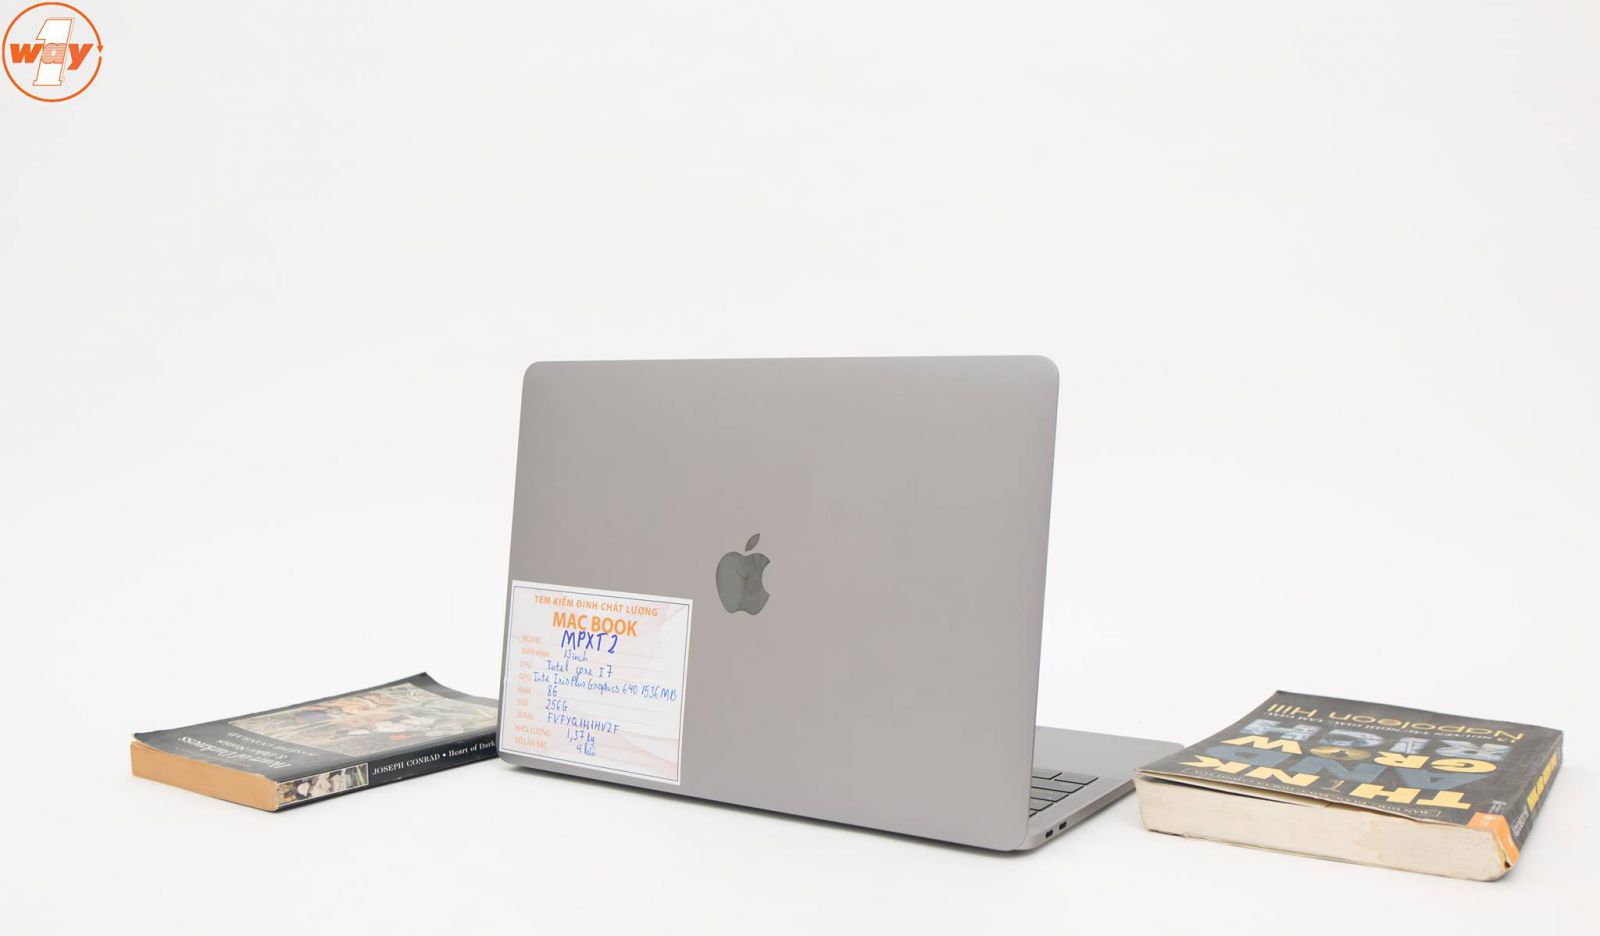 MacBook Pro i5 13 inch cũ đời 2017 - MPXT2 với nhiều nâng cấp cấu hình